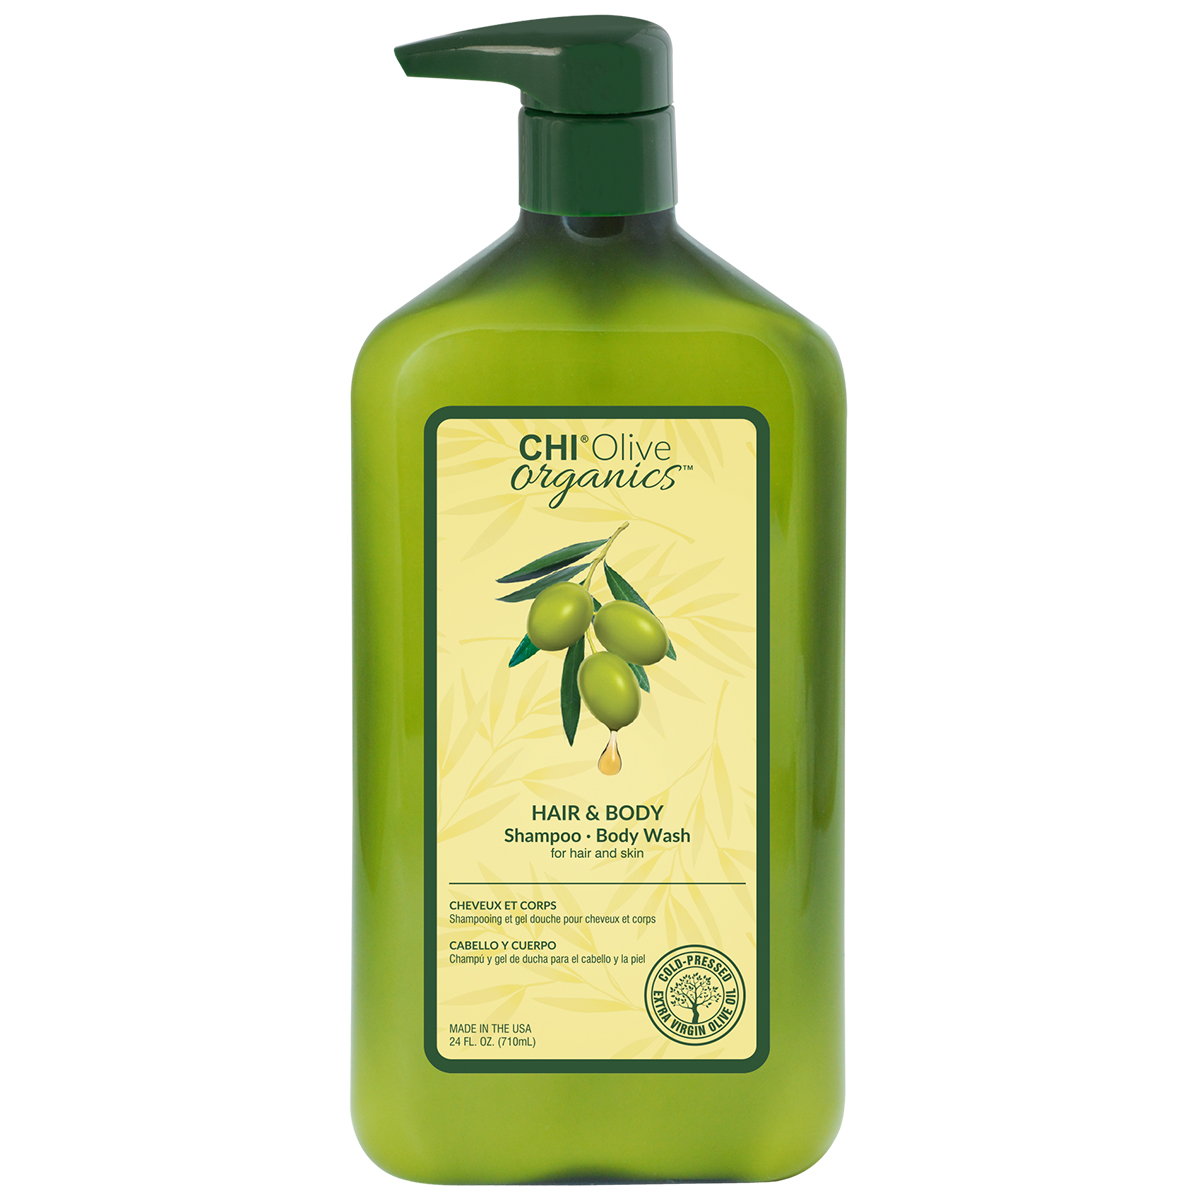 FAROUK CHI Olive Organics šampūnas ir kūno prausiklis su ekologišku alyvuogių aliejumi, 710ml